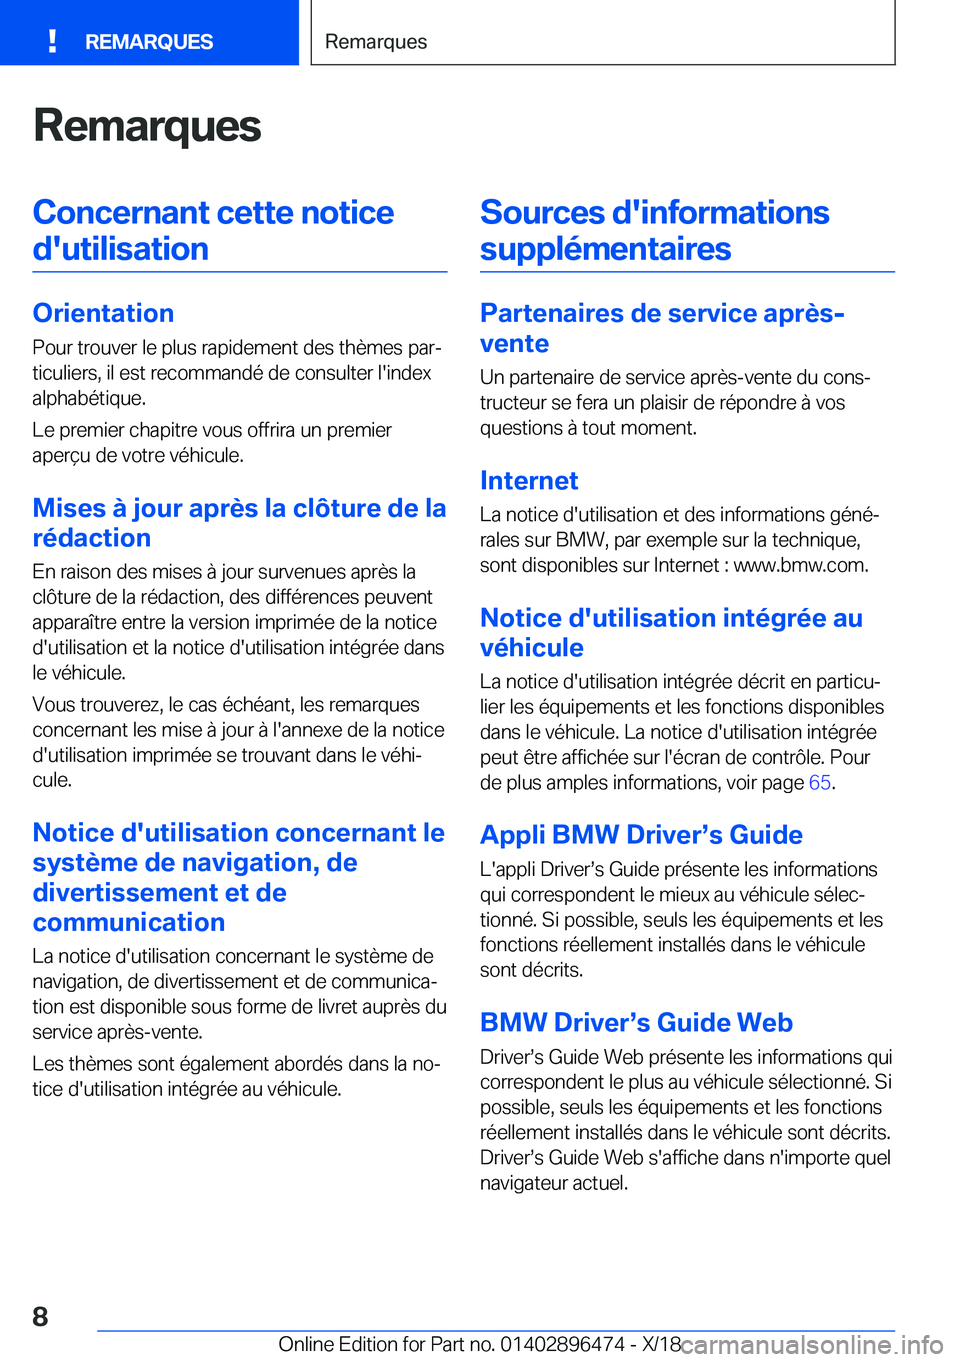 BMW X1 2019  Notices Demploi (in French) �R�e�m�a�r�q�u�e�s�C�o�n�c�e�r�n�a�n�t��c�e�t�t�e��n�o�t�i�c�e�d�'�u�t�i�l�i�s�a�t�i�o�n
�O�r�i�e�n�t�a�t�i�o�n �P�o�u�r��t�r�o�u�v�e�r��l�e��p�l�u�s��r�a�p�i�d�e�m�e�n�t��d�e�s��t�h�è�m�